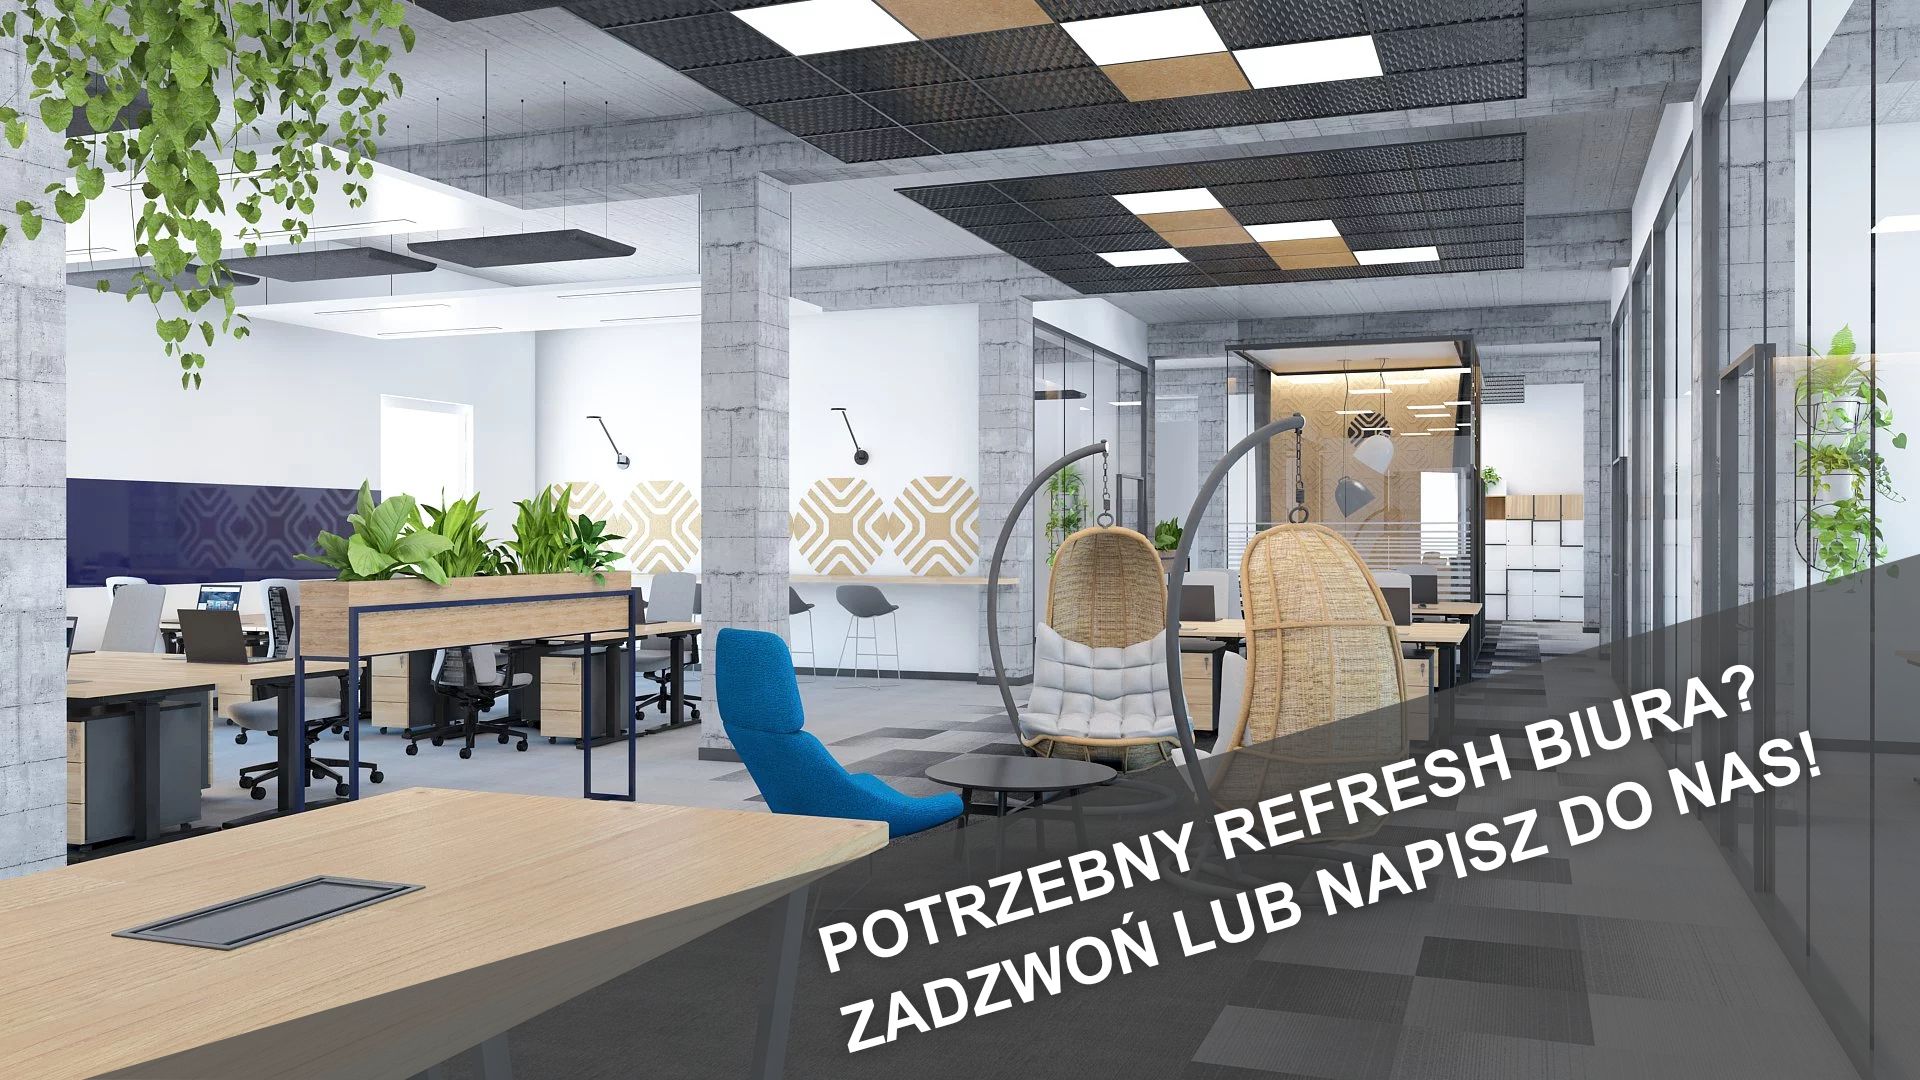 Refreshe biura, projekty refreshu wnętrz biurowych, Kraków, Katowice, Warszawa